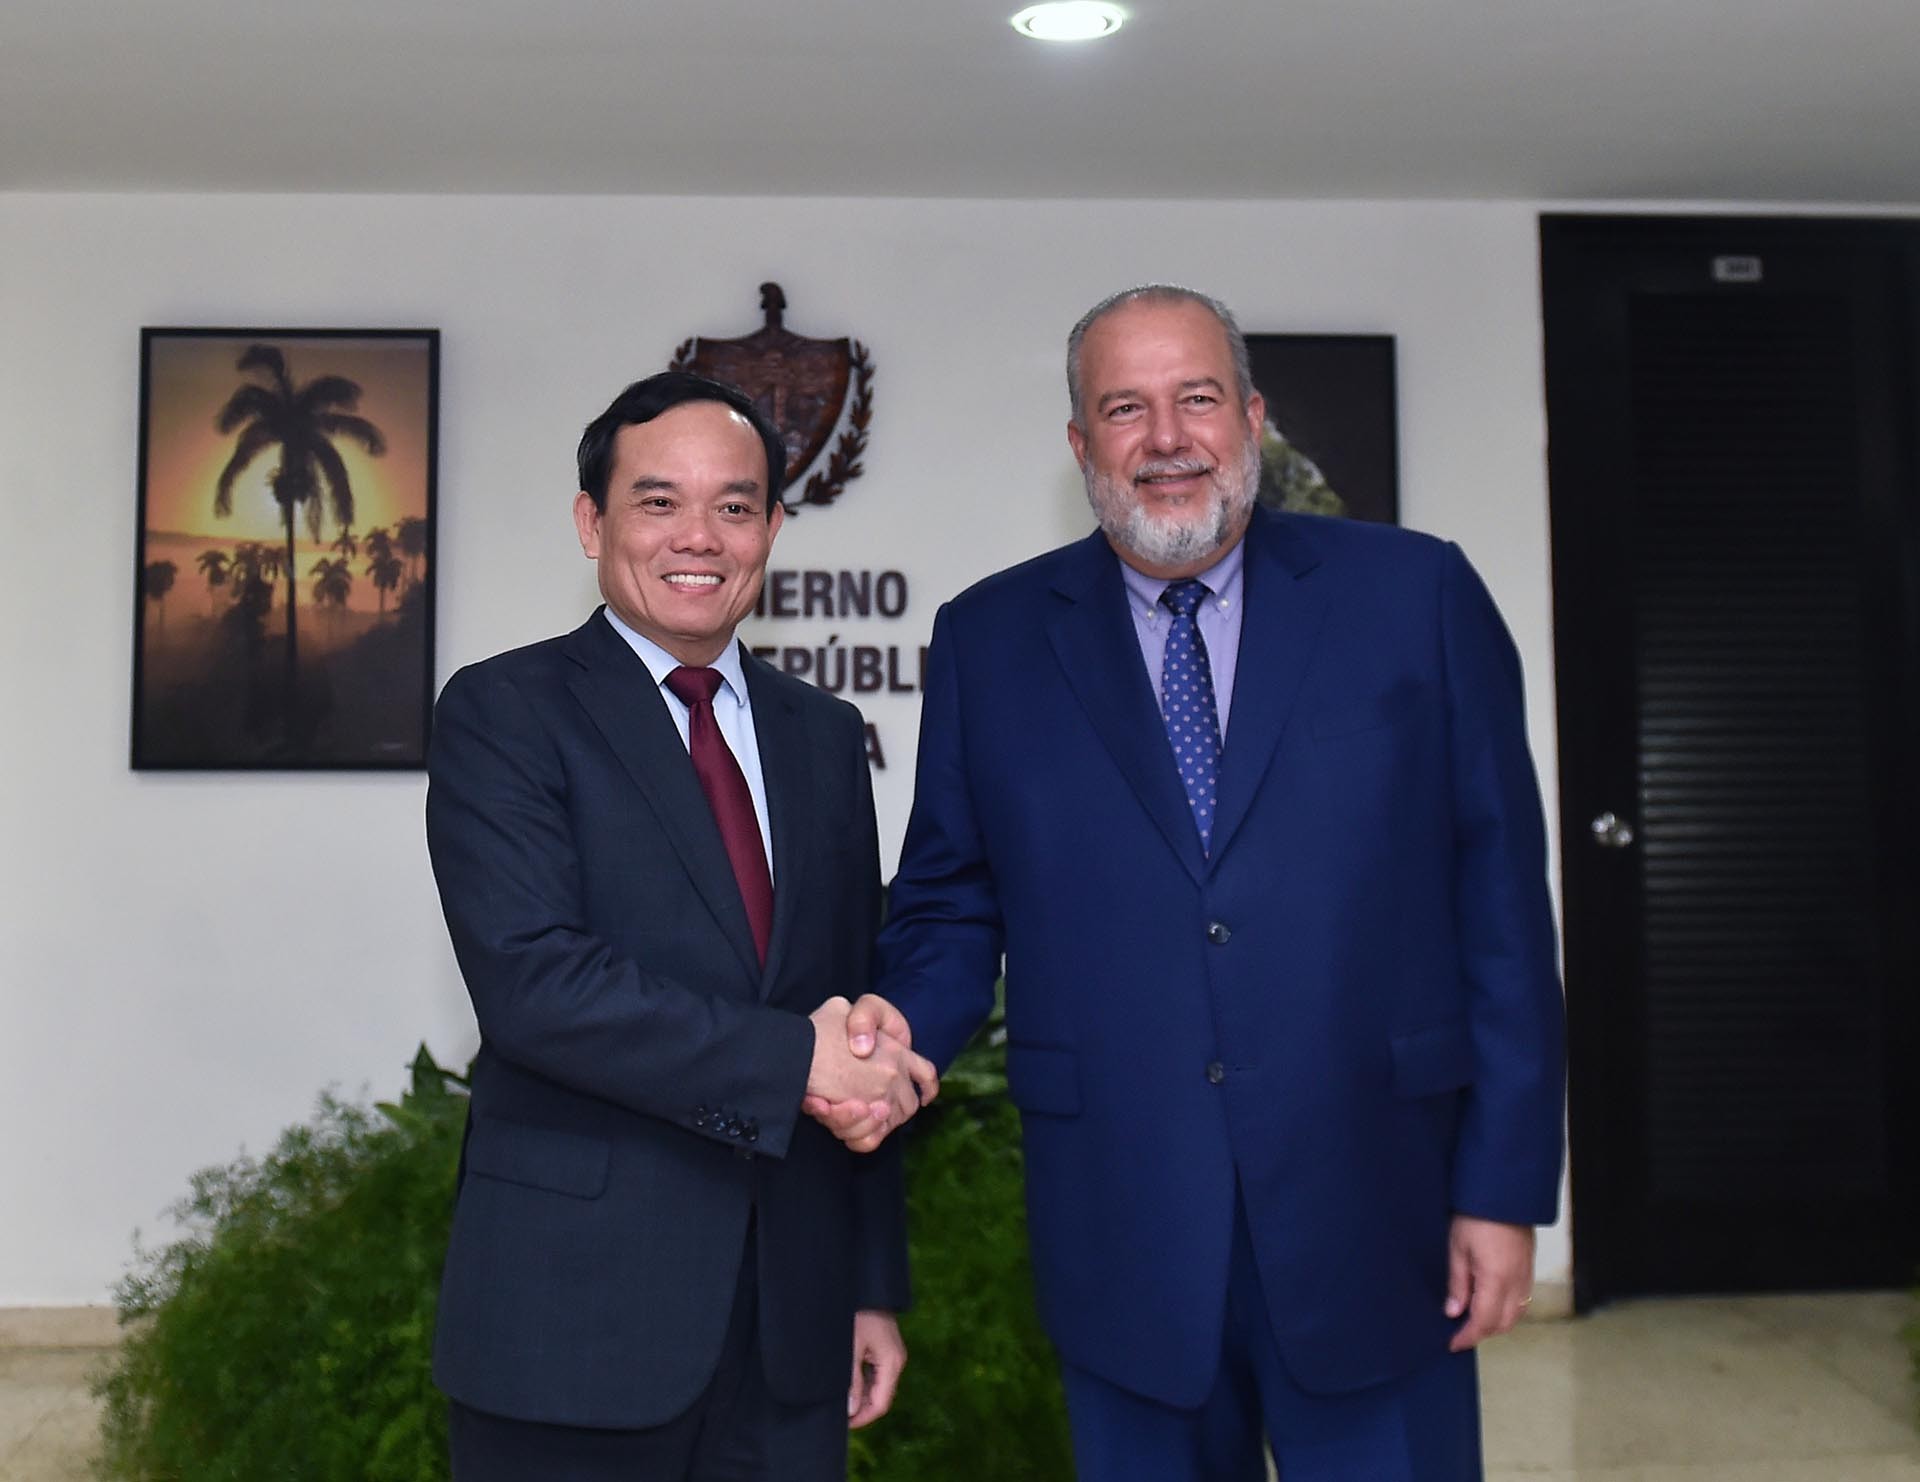 Phó Thủ tướng Chính phủ Trần Lưu Quang hội kiến Thủ tướng Cuba Manuel Marrero Cruz.  (Nguồn: VGP)